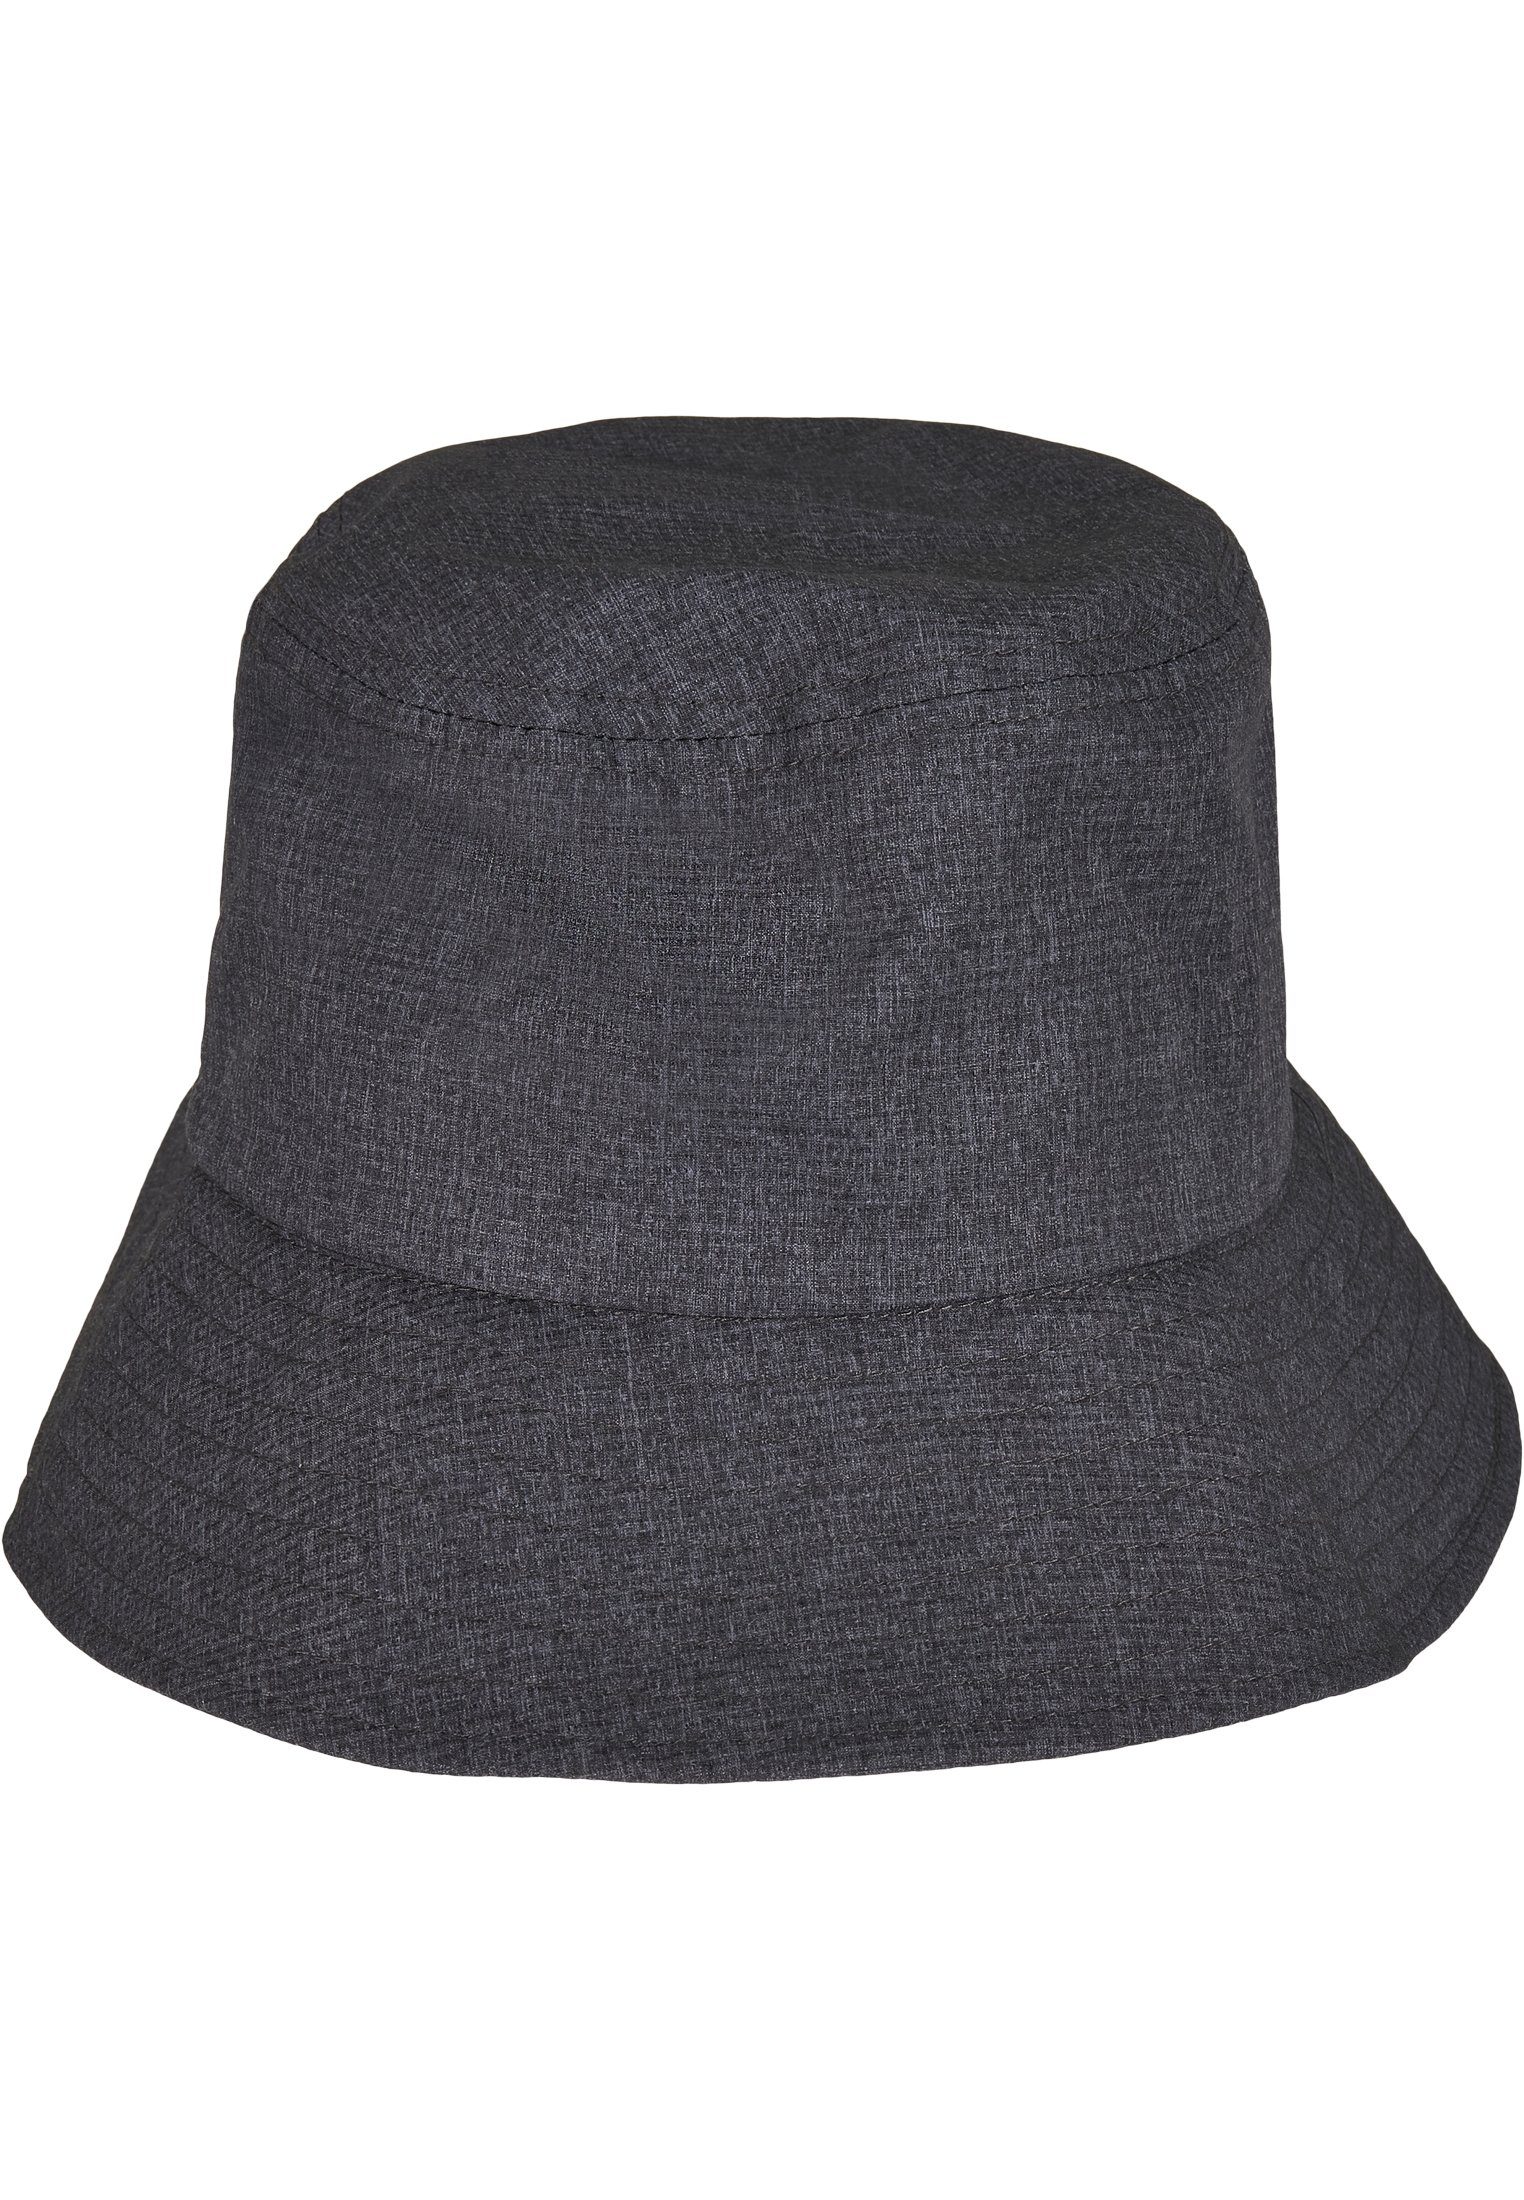 Flexfit Flex Cap Bucket Hat Adjustable Flexfit Bucket Hat heathergrey